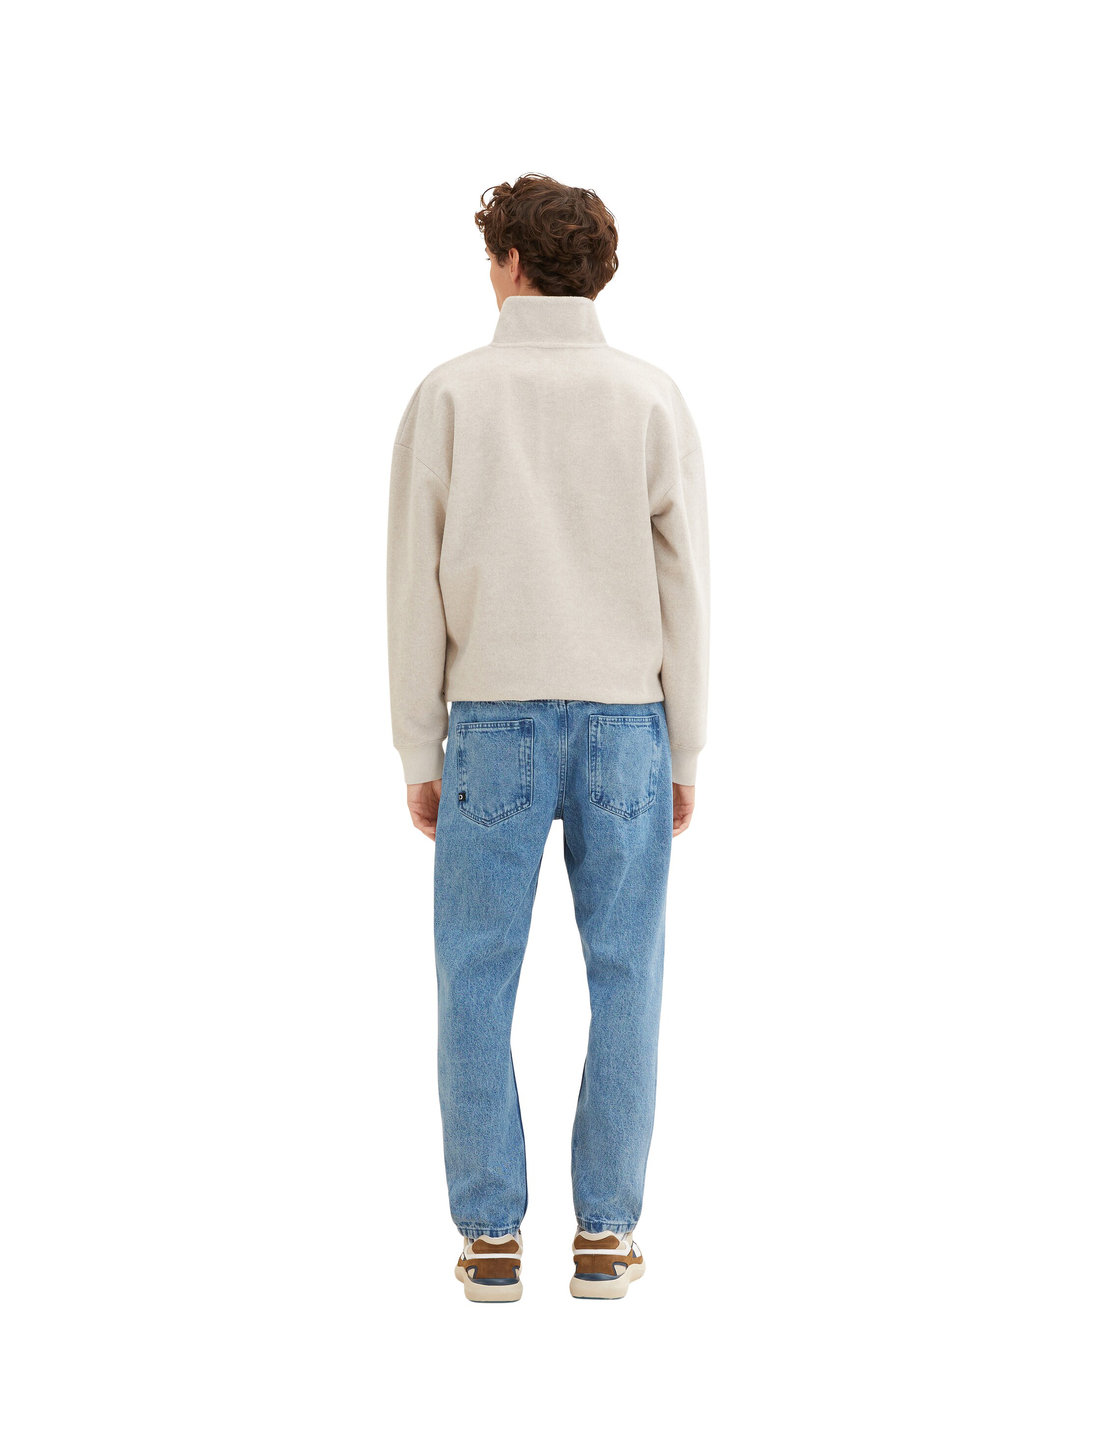 Tom Tailor Denim Tom Tailor Loose Fit – jeans – shop at Booztlet